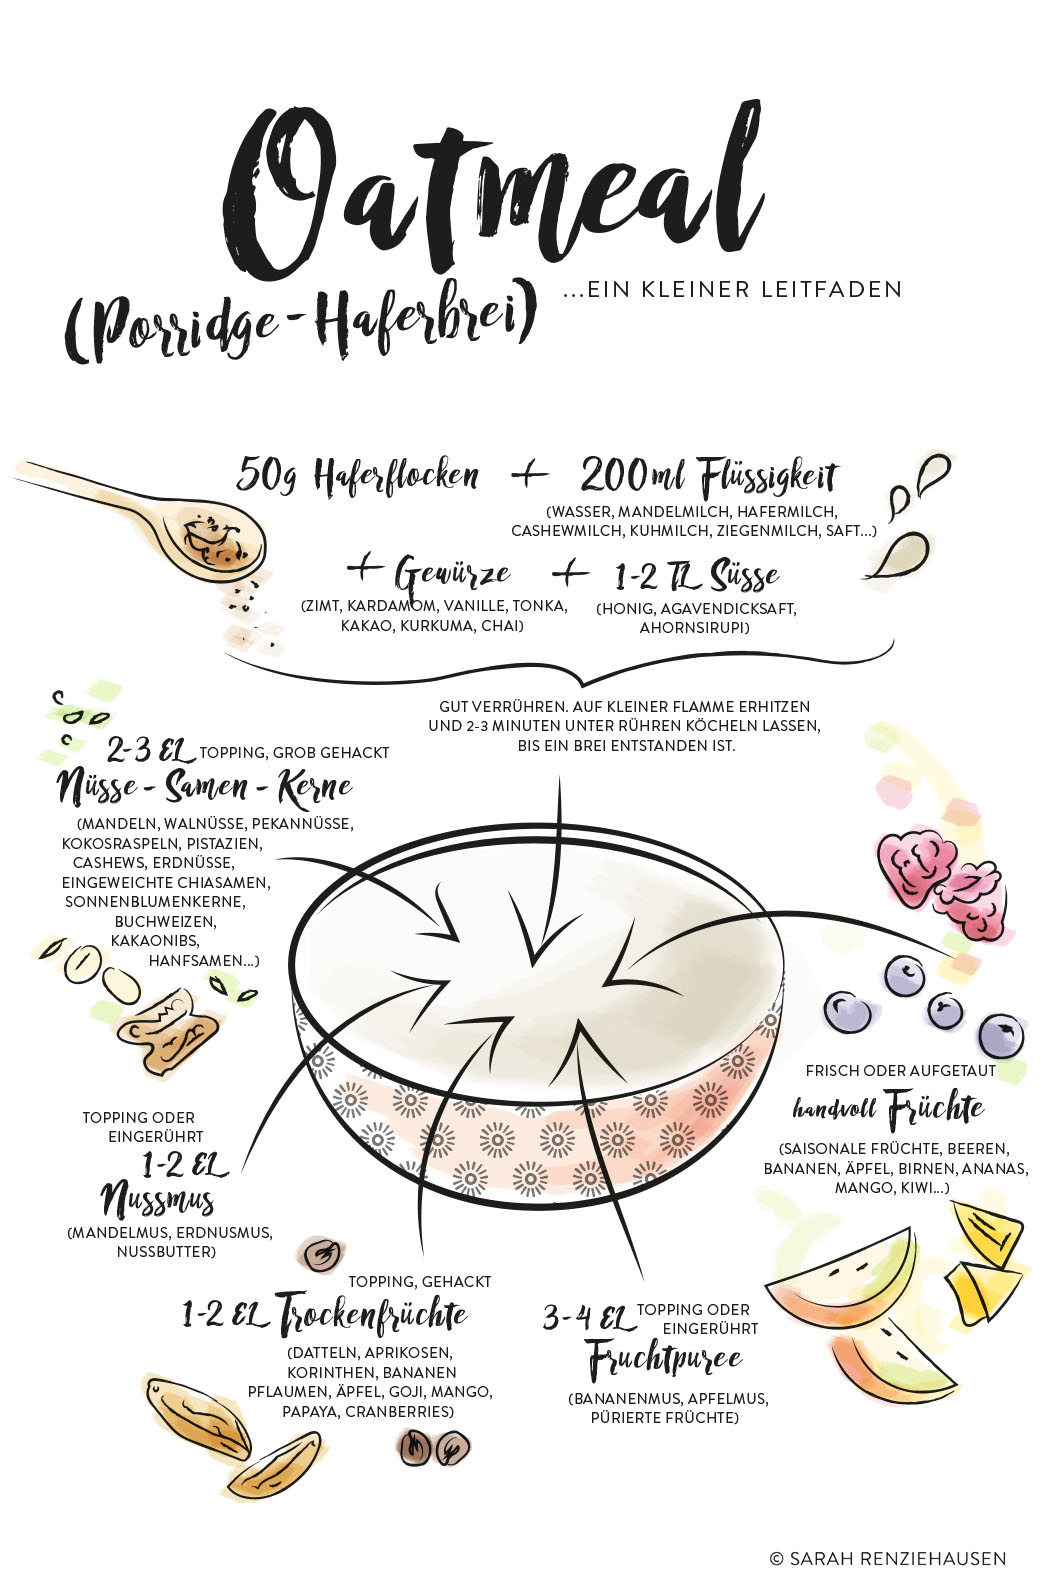 Oatmeal-Porridge-Haferbrei, ein kleiner illustrierter Leitfaden zur Zubereitung und Rezeptideen